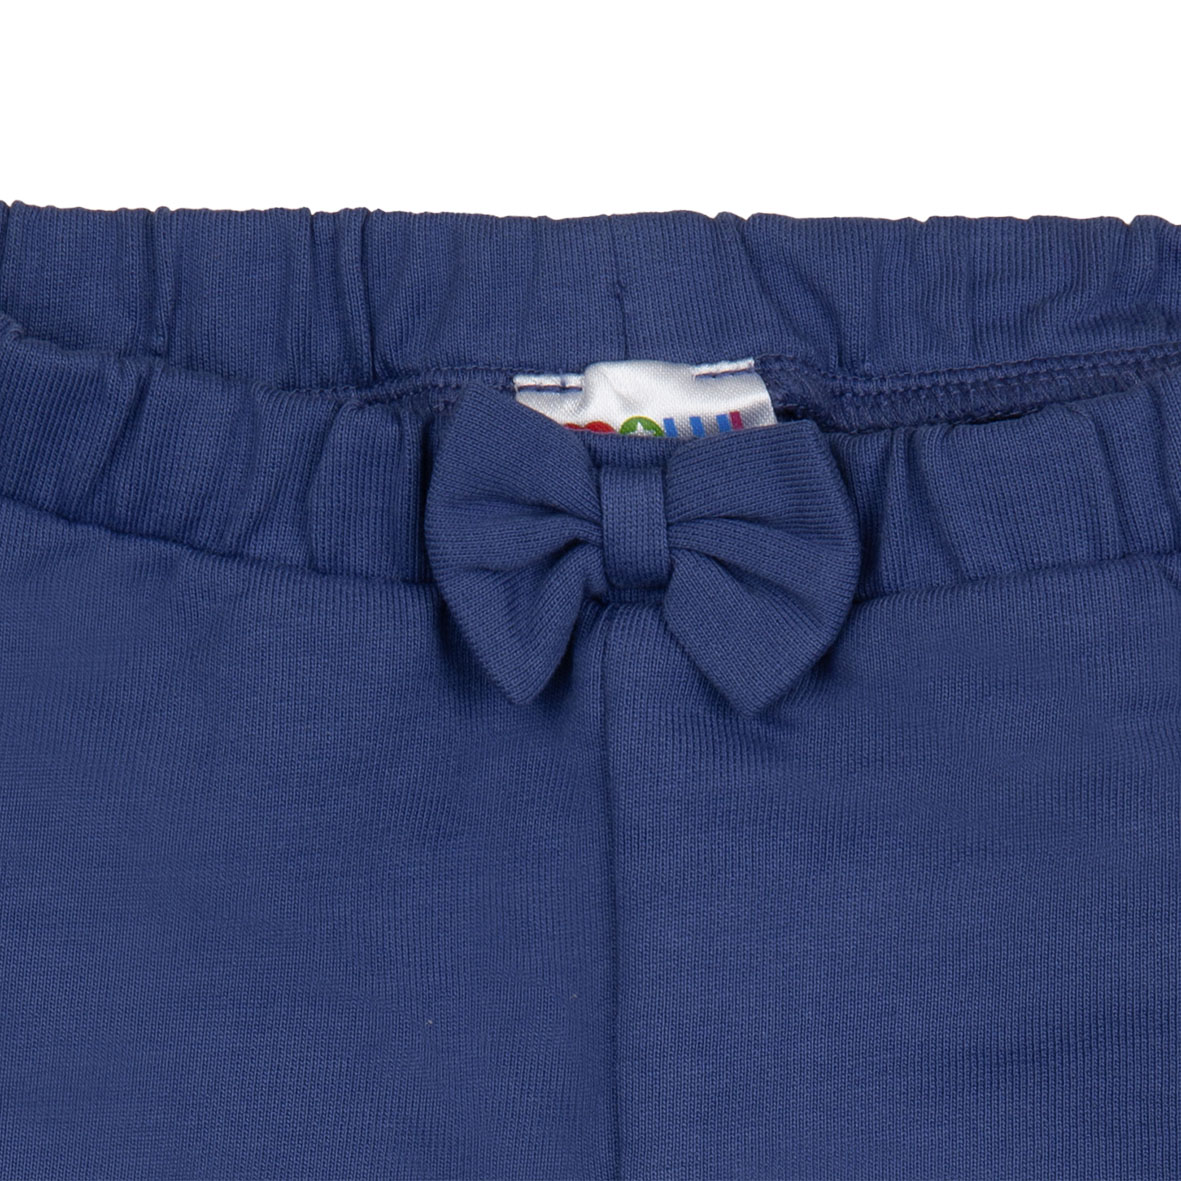 Mawi pantalone felpina con fiocco 3m - Mawi